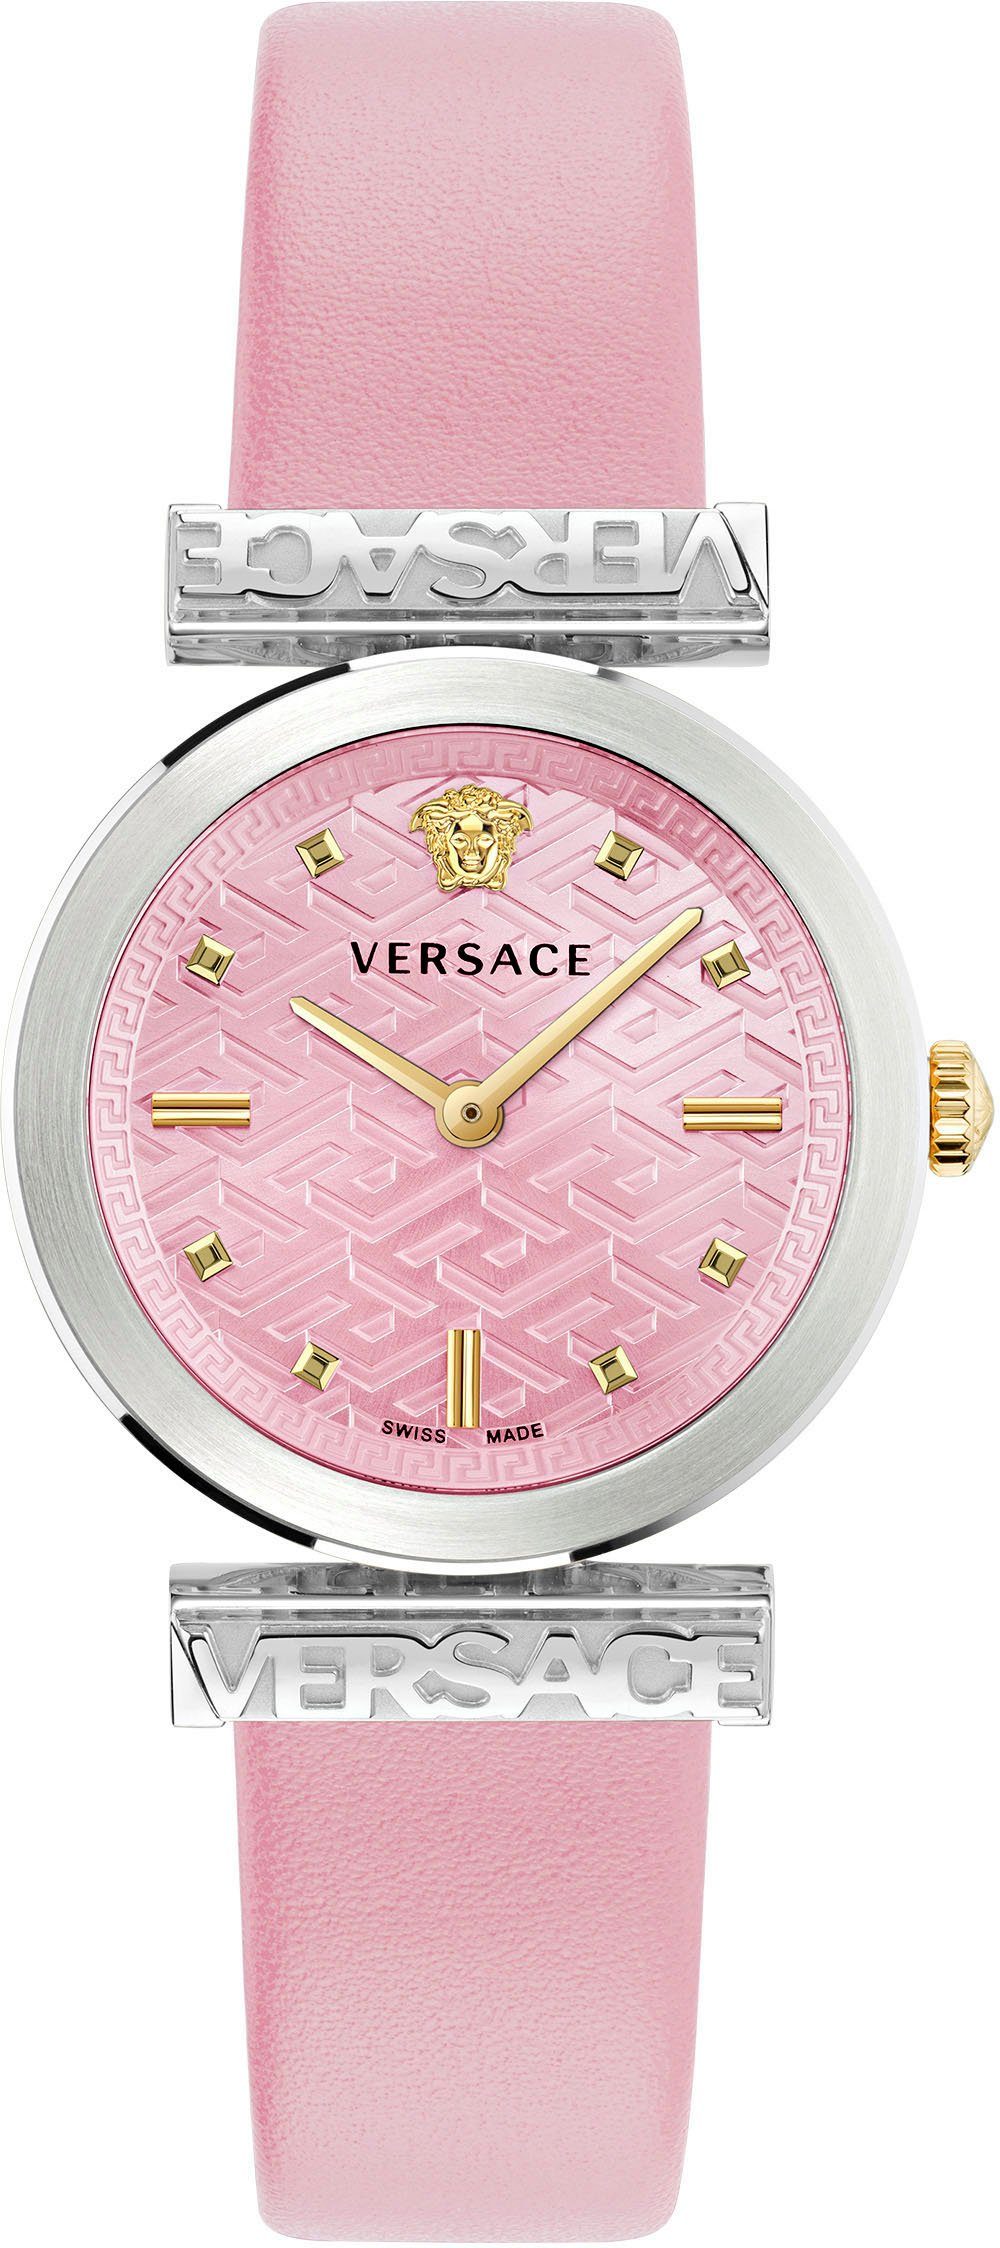 Quarzuhr Versace rosa VE6J00823 REGALIA,